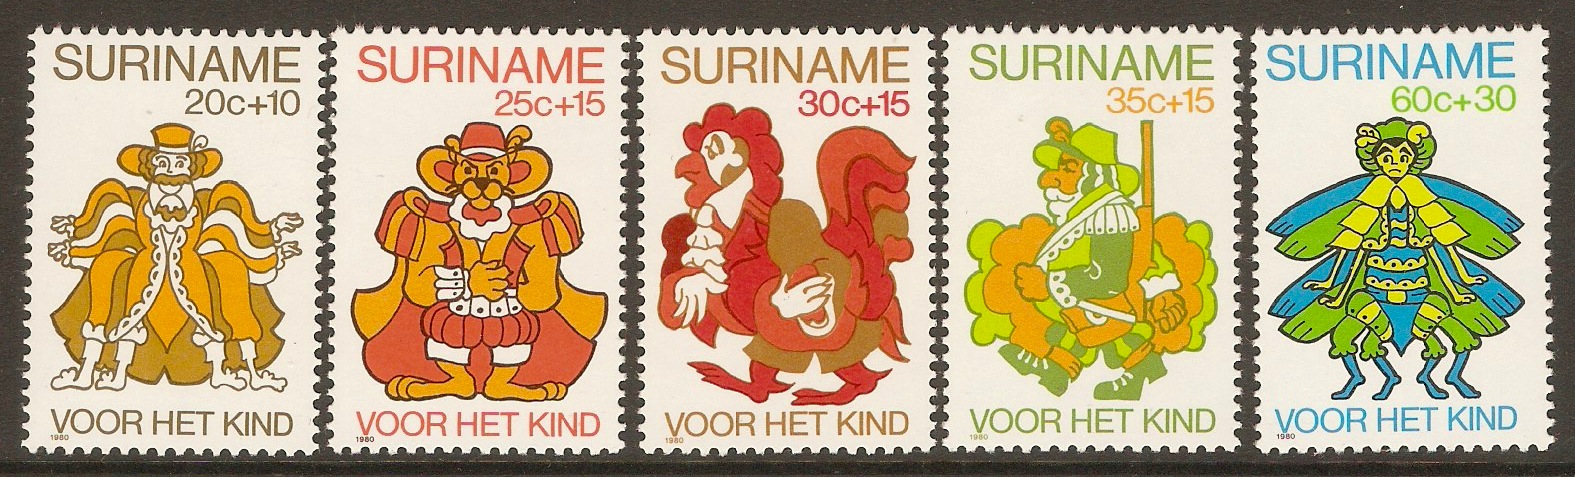 Surinam 1980 Child Welfare set. SG1013-SG1017.